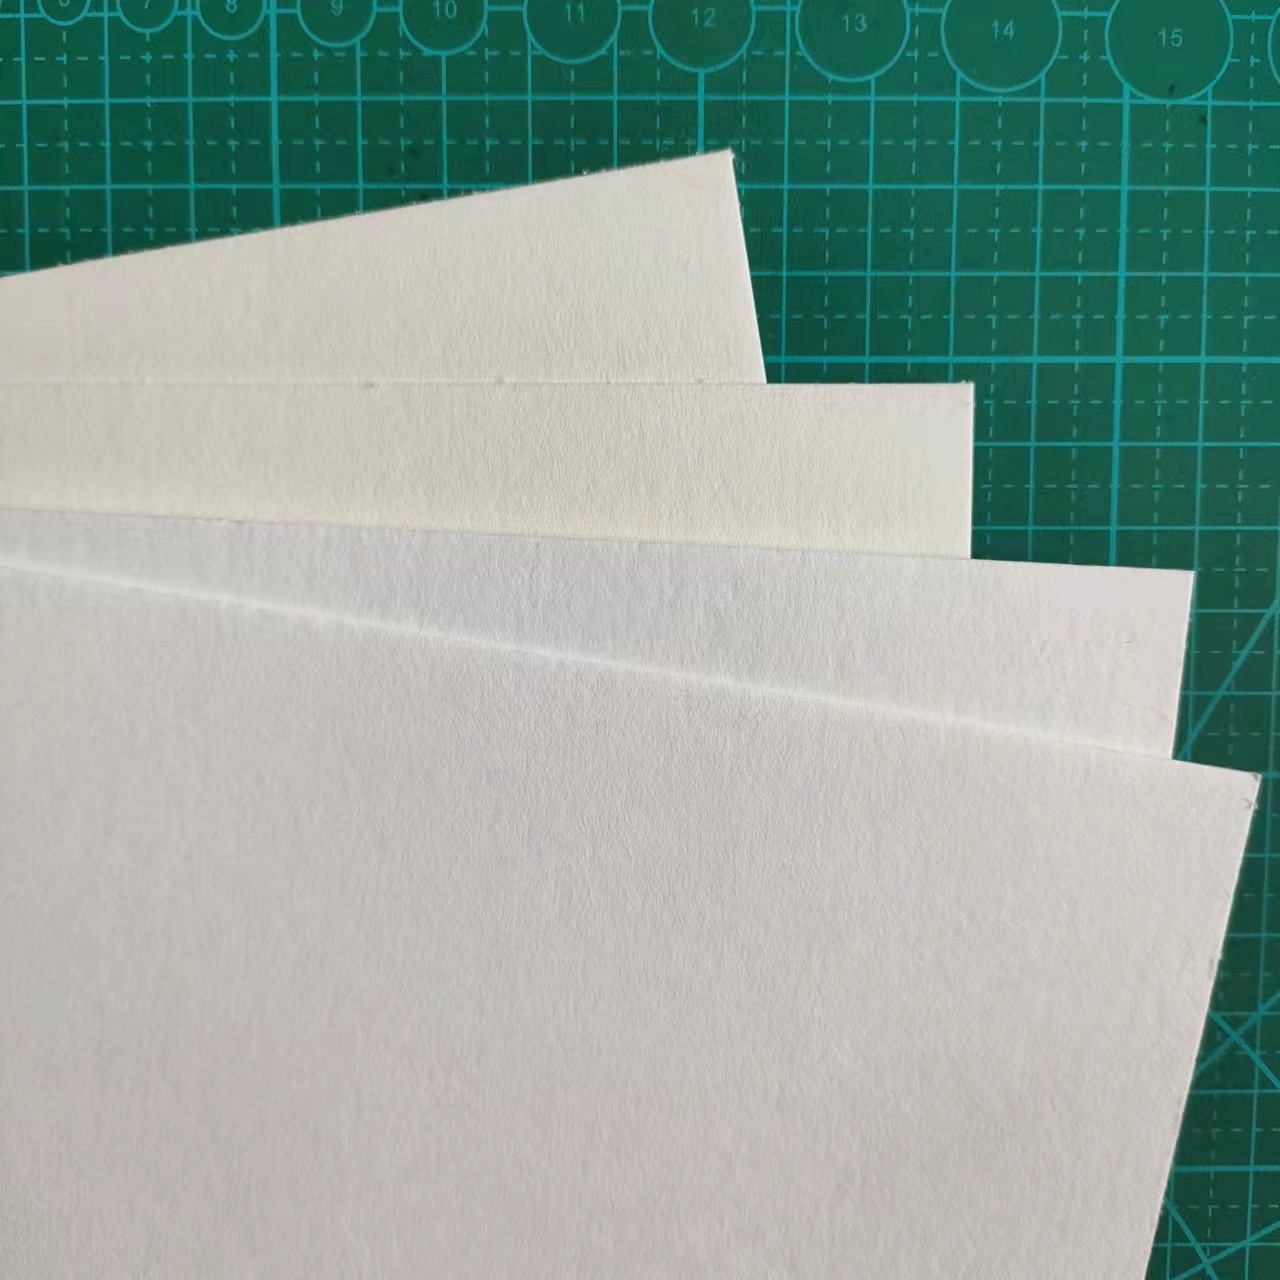 0.4本白超白吸水纸0.6食品级吸水棉纸0.4mm湿度卡试香工业吸水纸